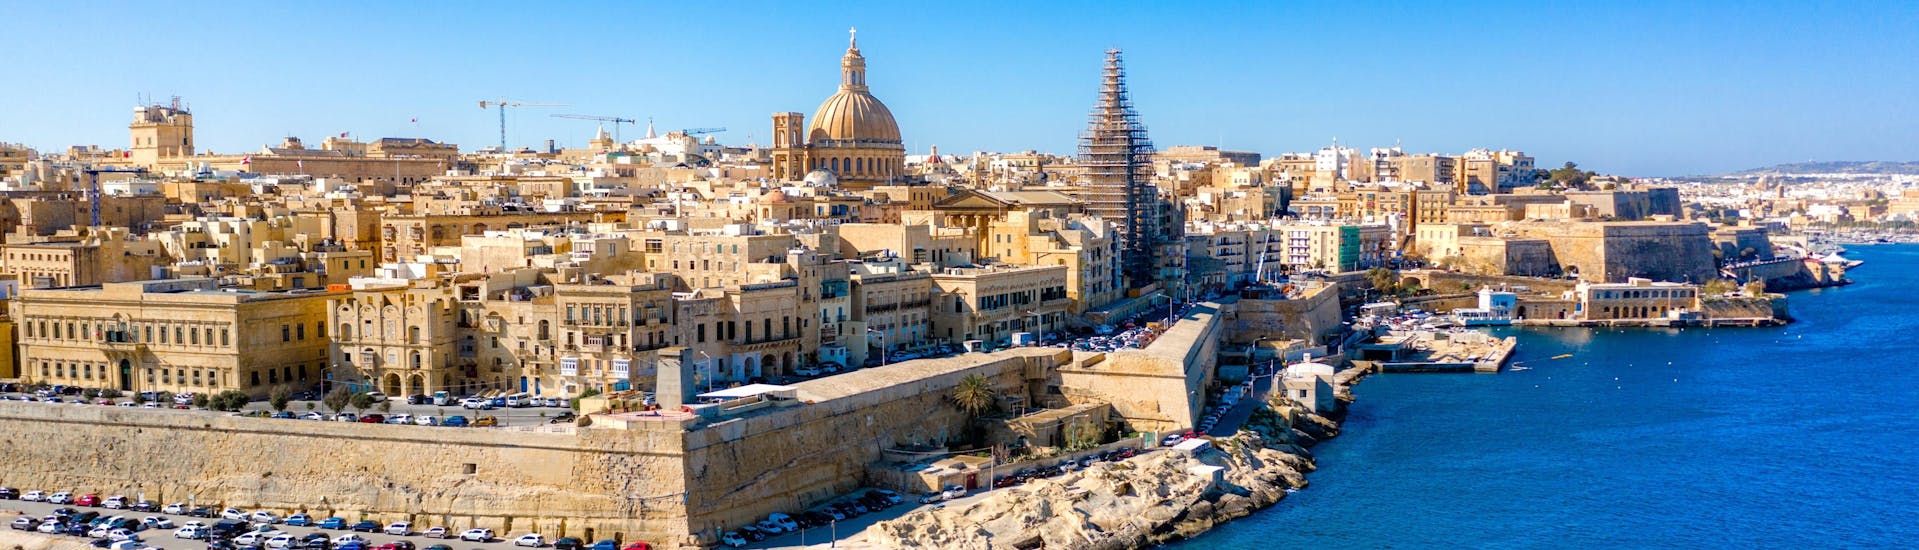 La città di Sliema e la sua costa a Malta.